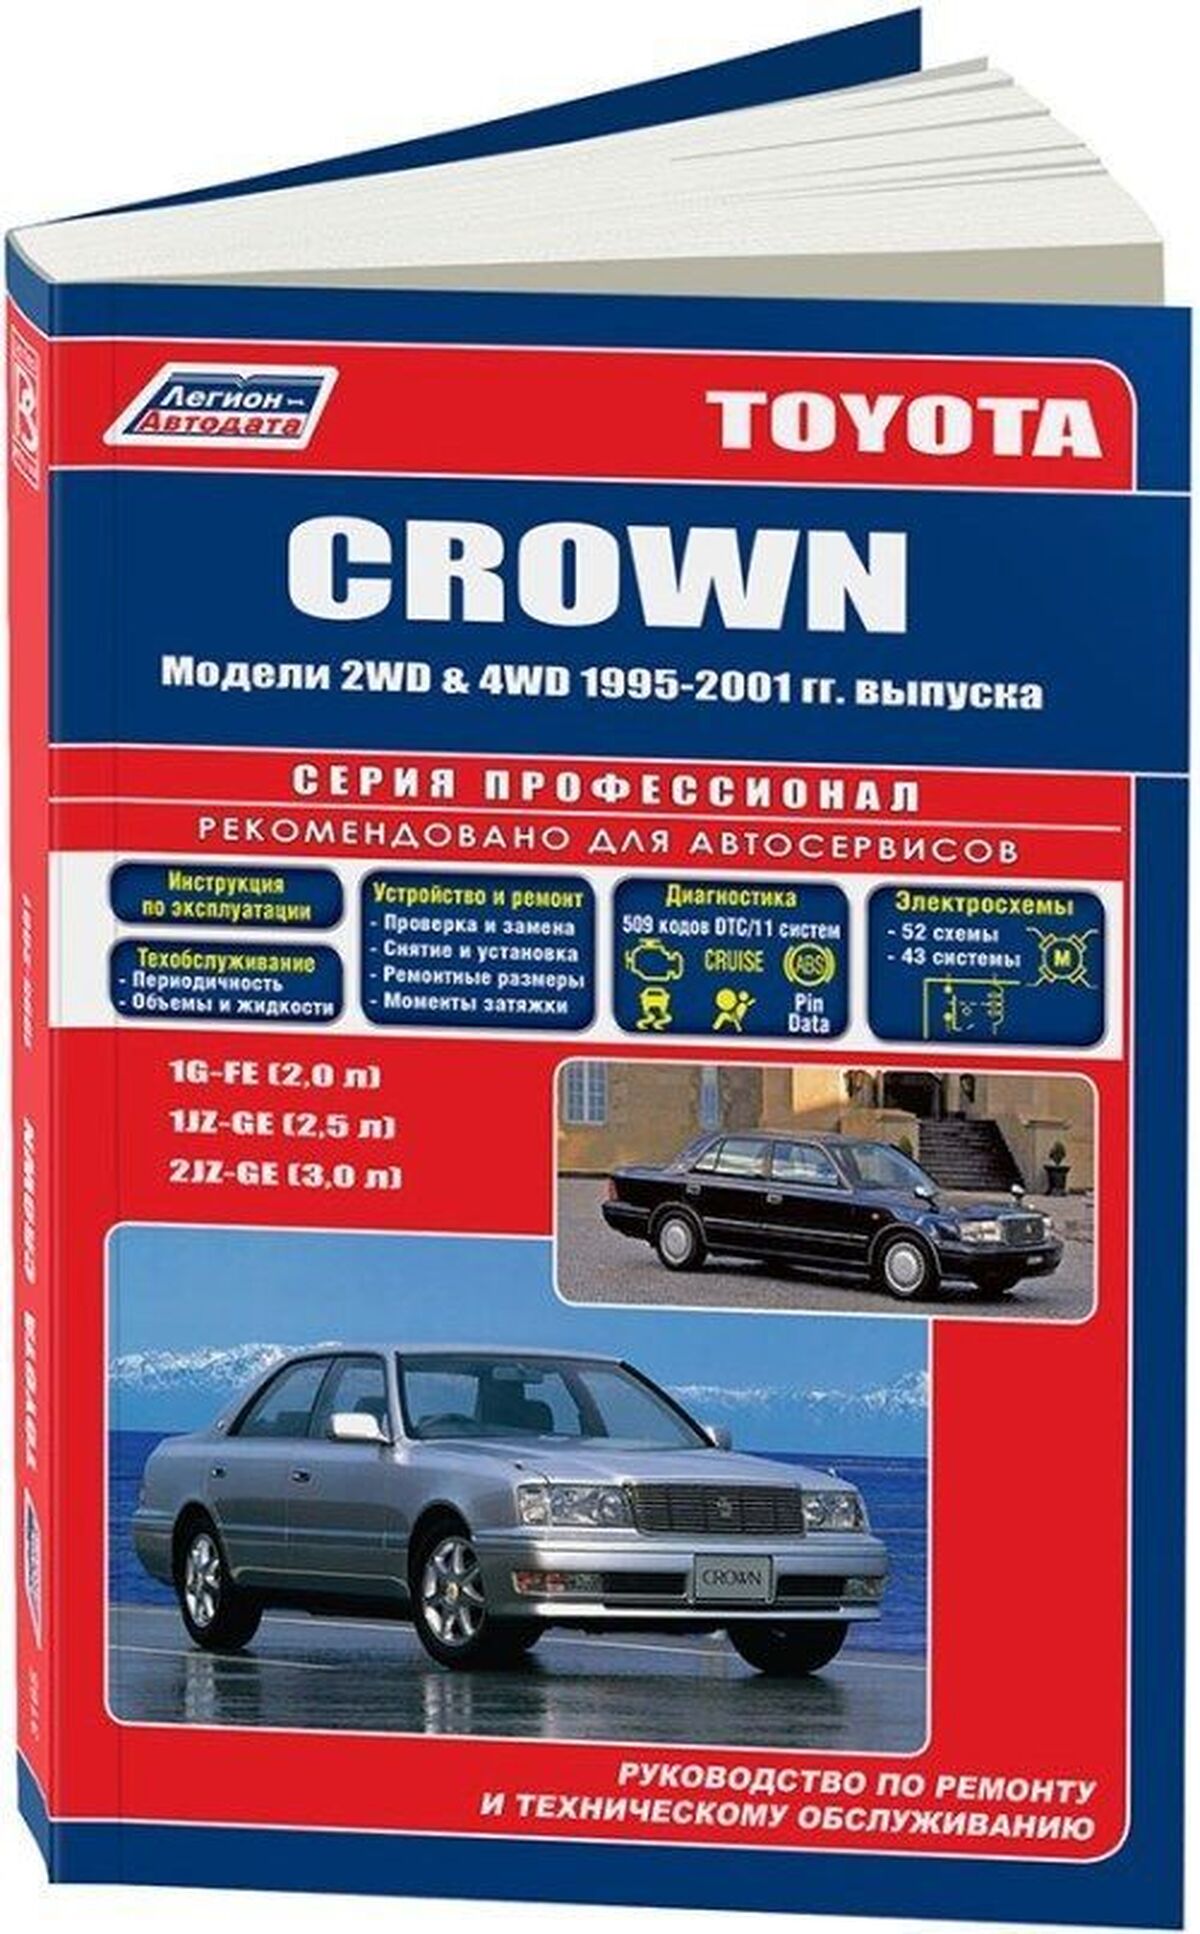 Книга: TOYOTA CROWN (б) 1995-2001 г.в., рем., экспл., то | Легион-Aвтодата